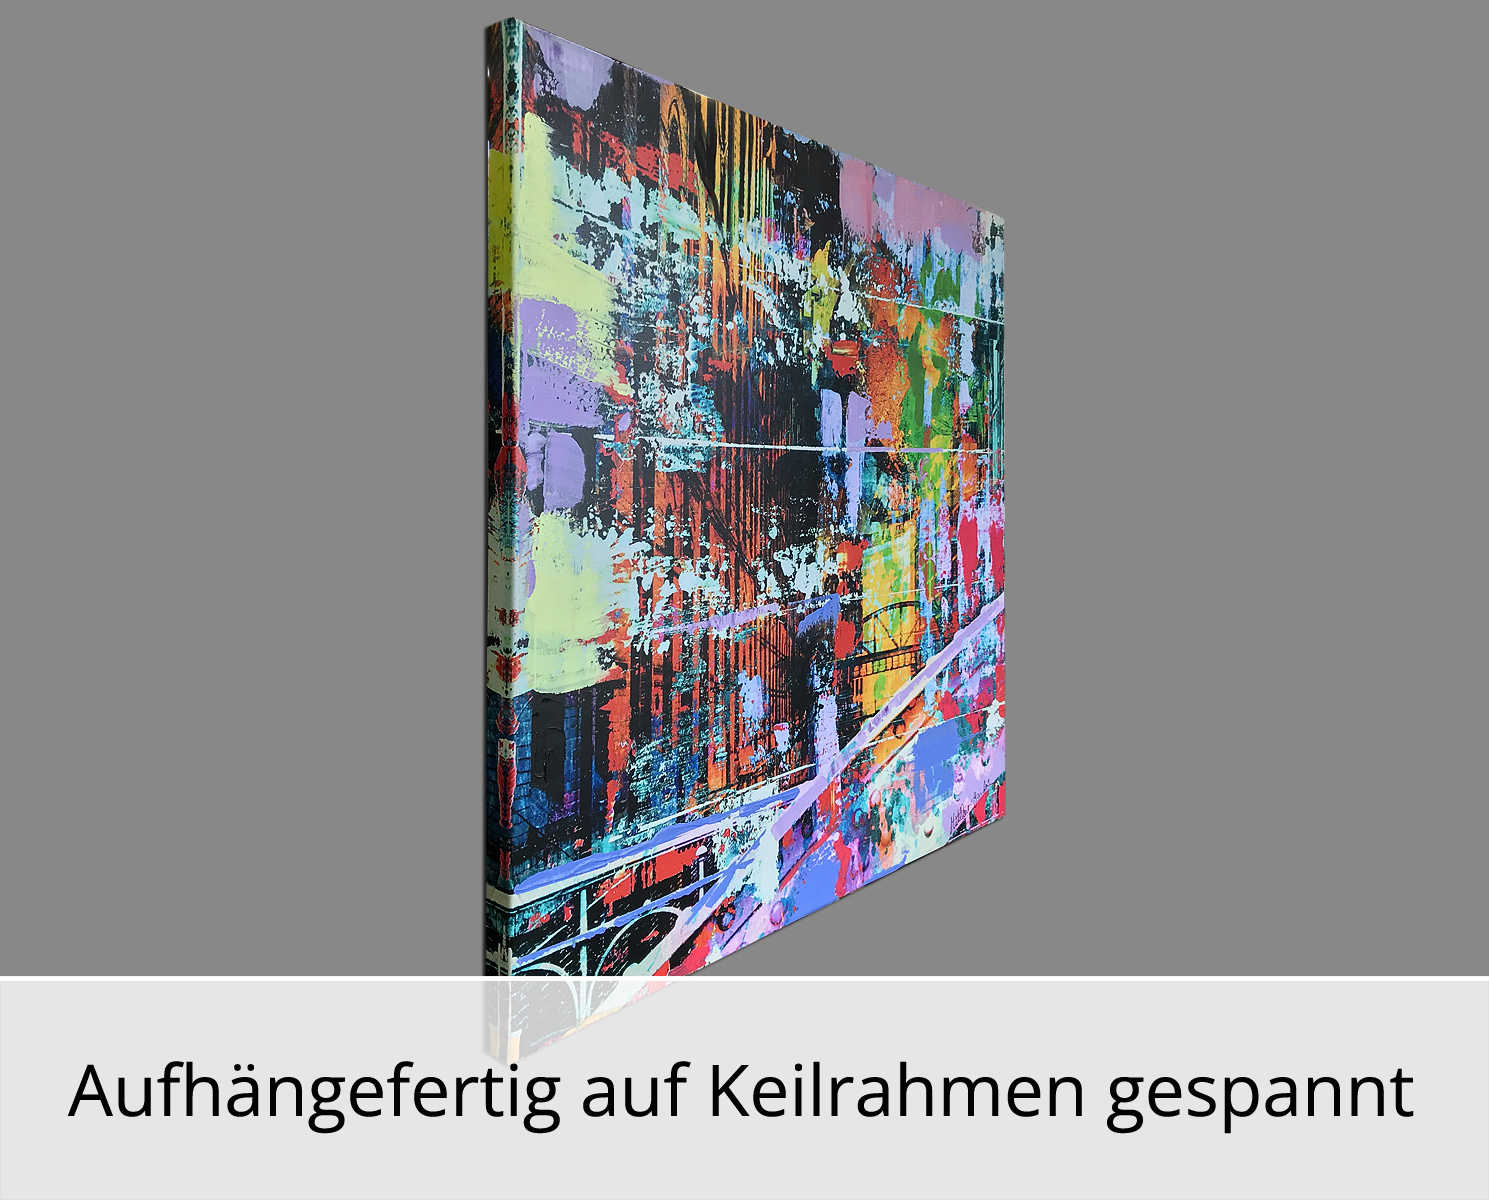 H. Mühlbauer-Gardemin: "Speicherstadt Hamburg", Moderne Pop Art, Original/serielles Unikat